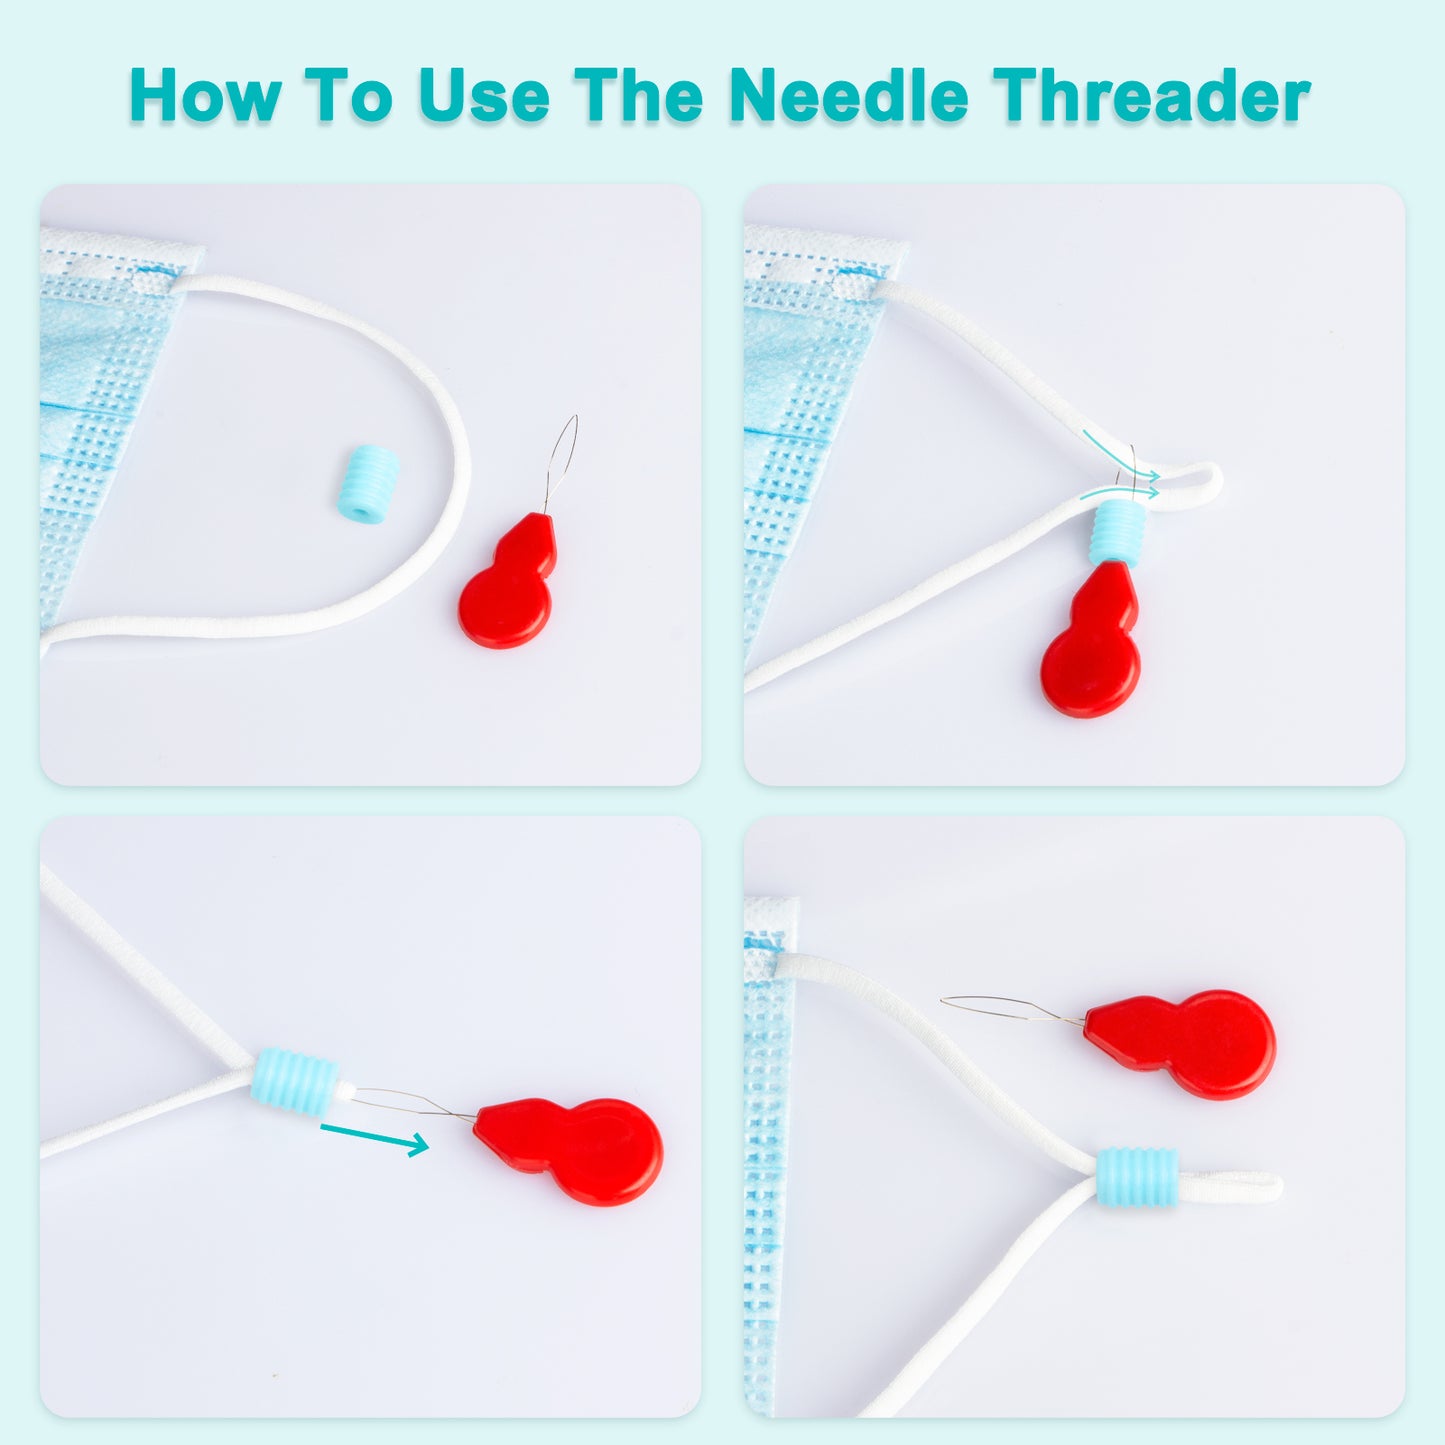 (300PCS Buckles+2PCS Needle Threaders) DIY Protection Value Pack, 10 Colors Reu